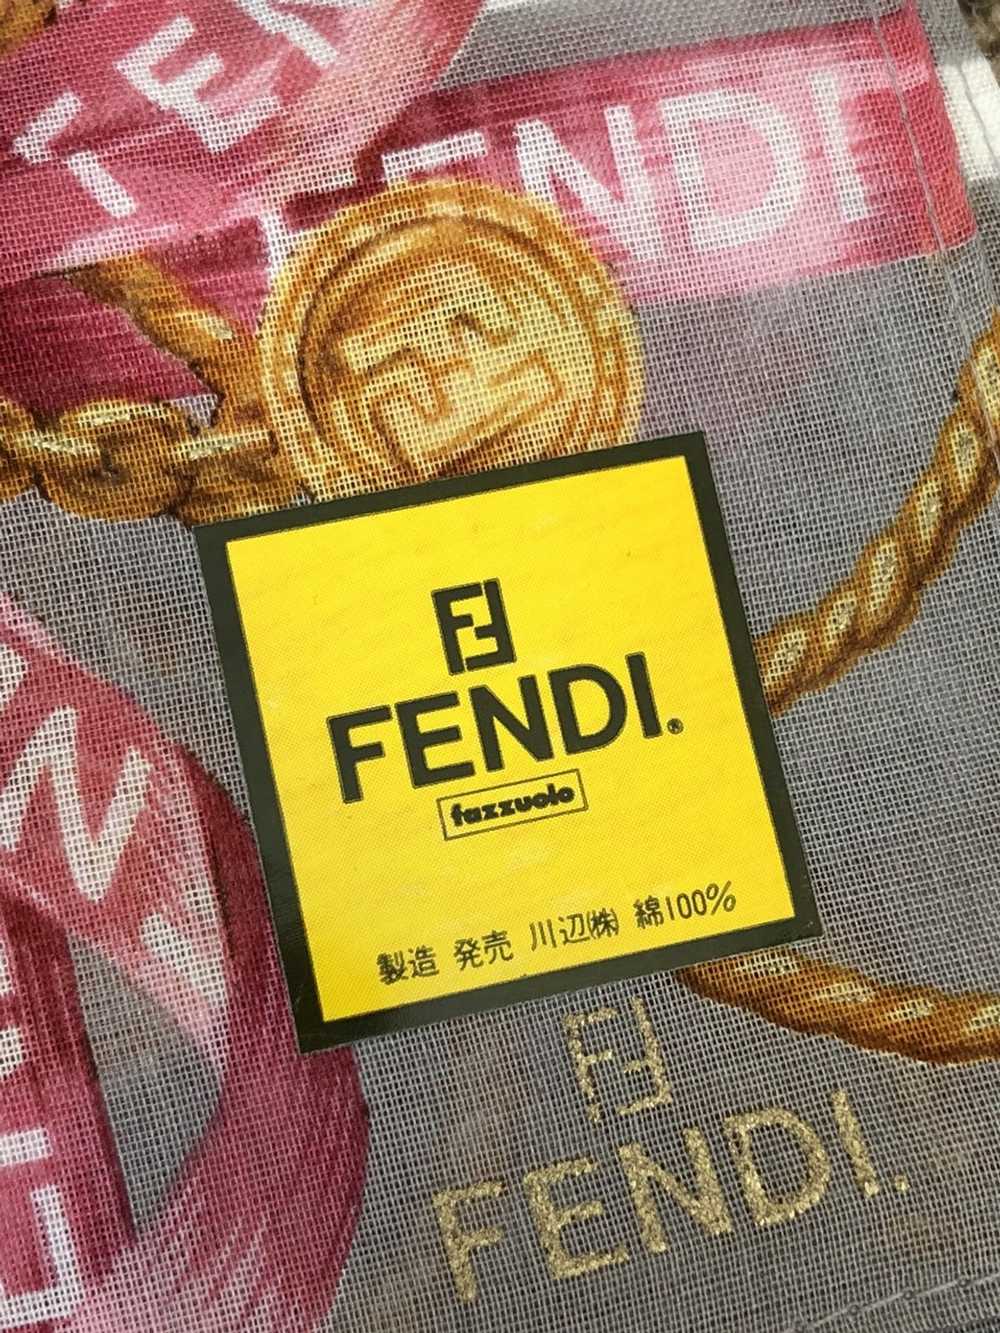 Fendi Fendi logo scarf / wrap - image 2